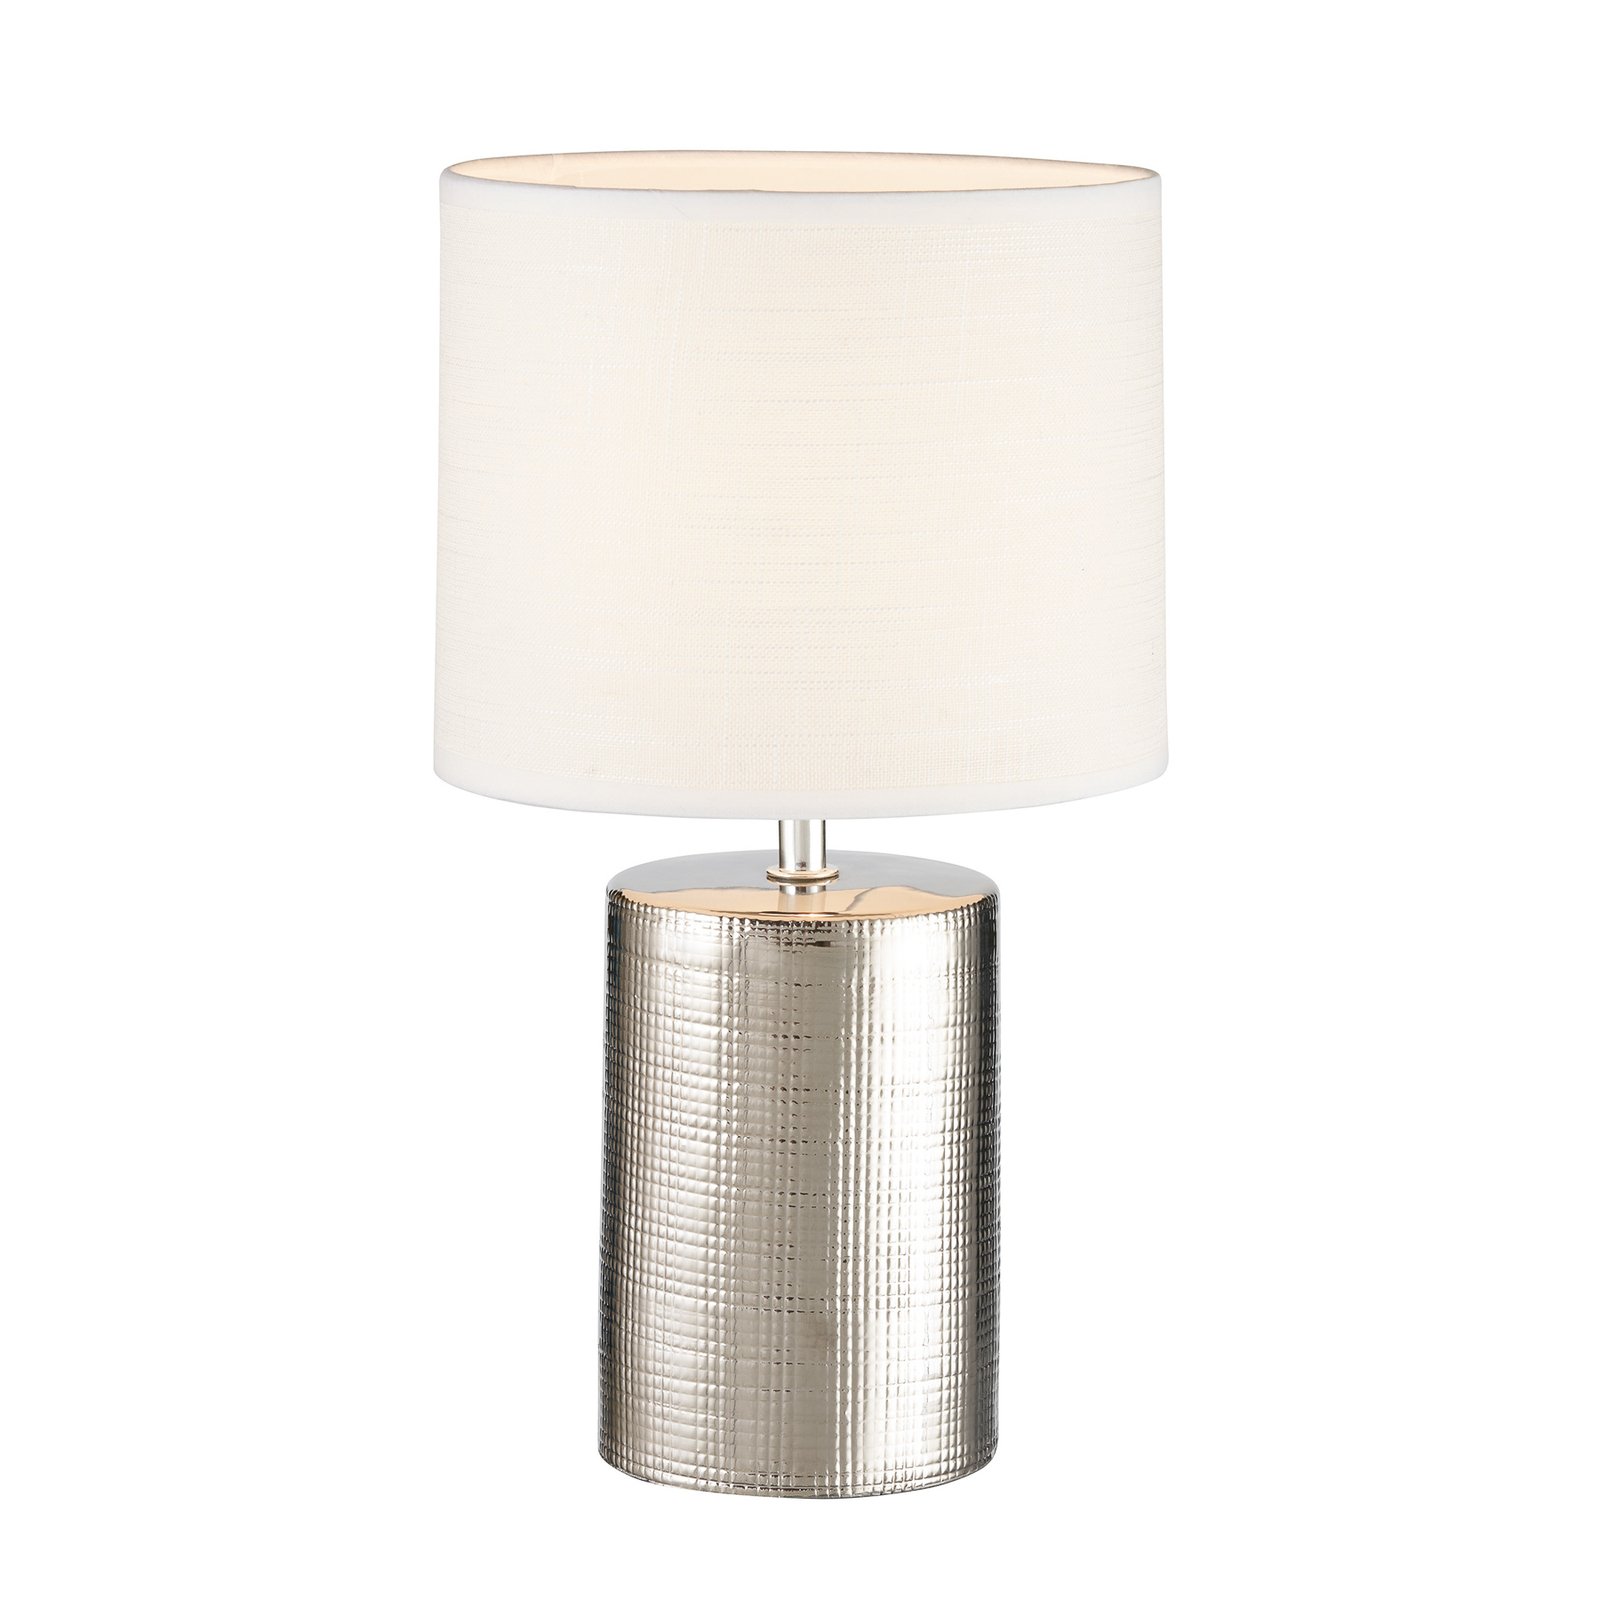 Lampa stołowa Prata, cylindryczna, biała/srebrna